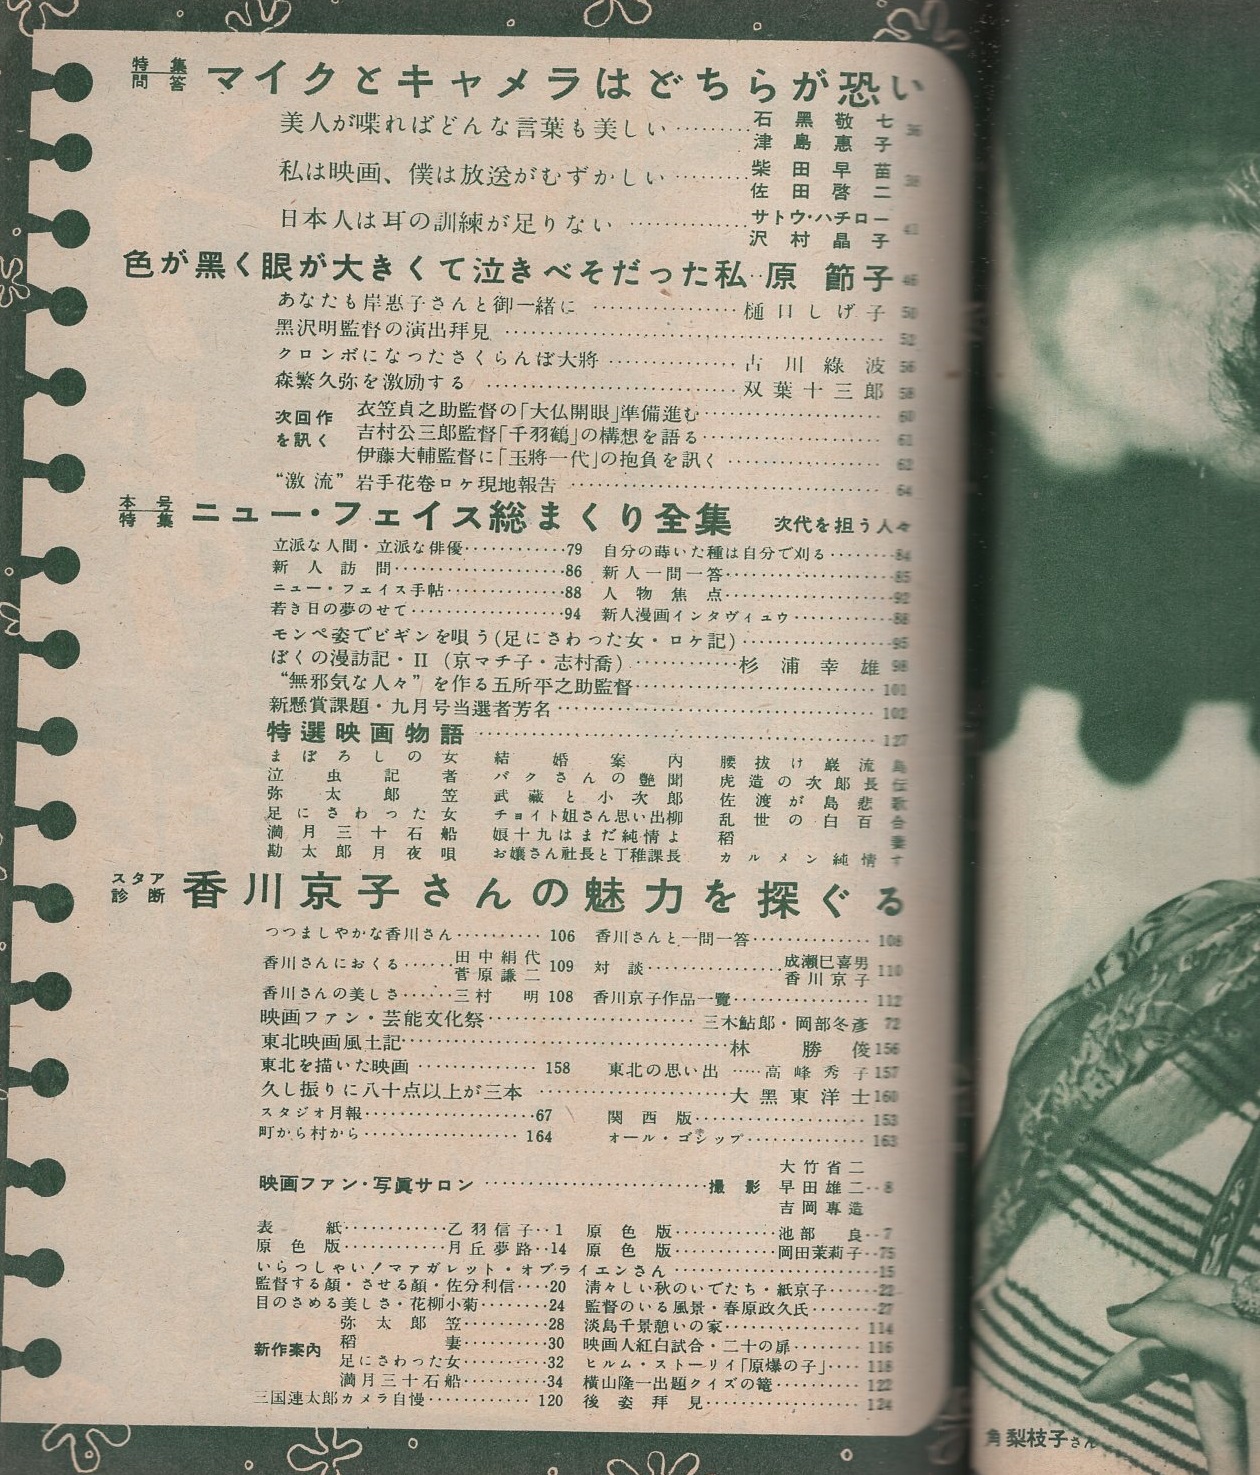 映画ファン 昭和27年11月号 表紙モデル・乙羽信子(〈カラー 池部良